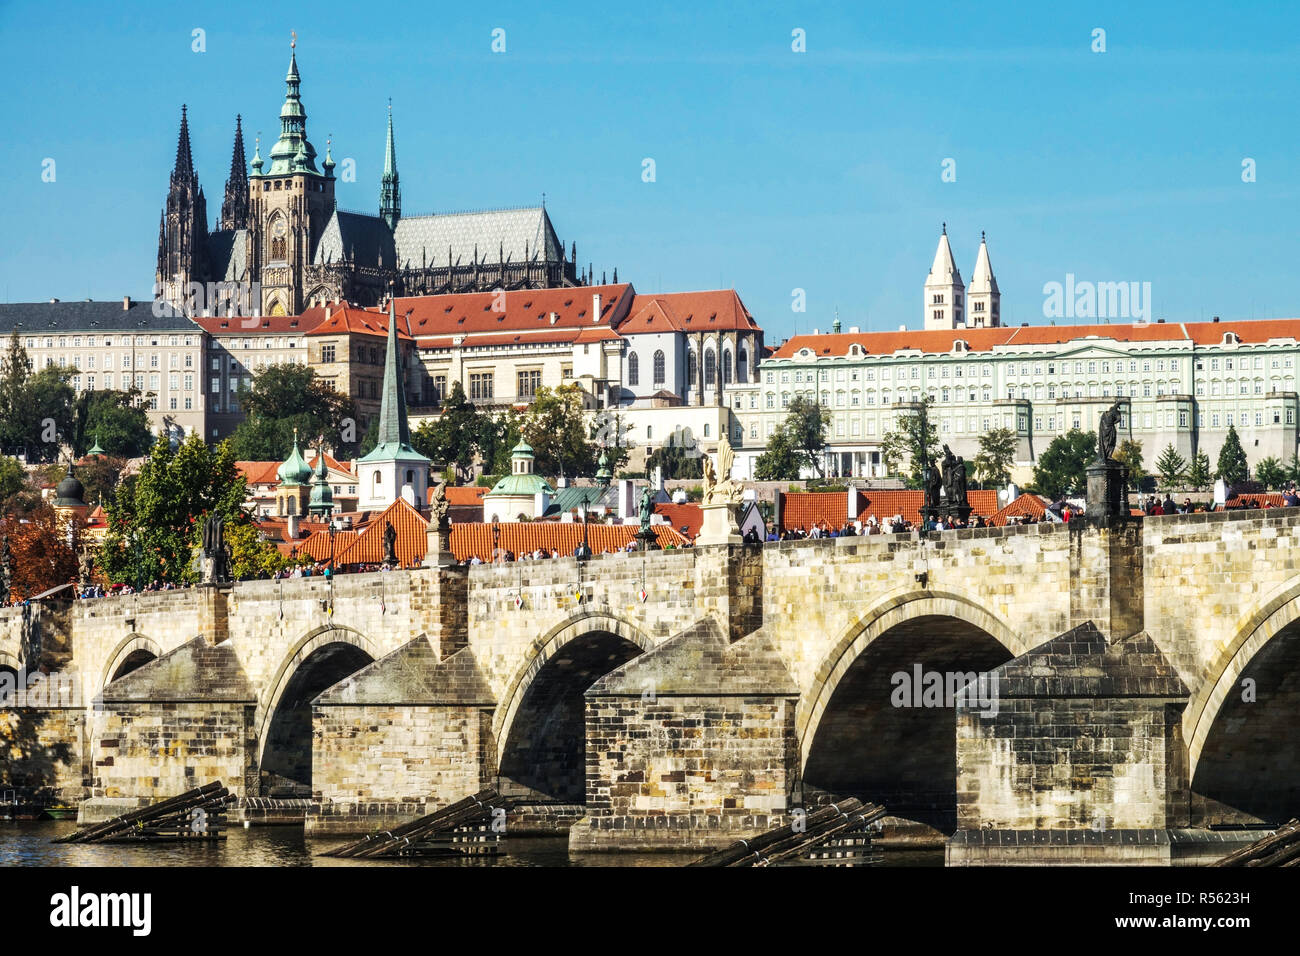 Puente de Carlos Castillo de Praga Praga Puente de la República Checa Europa Edificio gótico medieval Hradcany Panorama Ciudad de Praga Puente de Carlos y Castillo Foto de stock